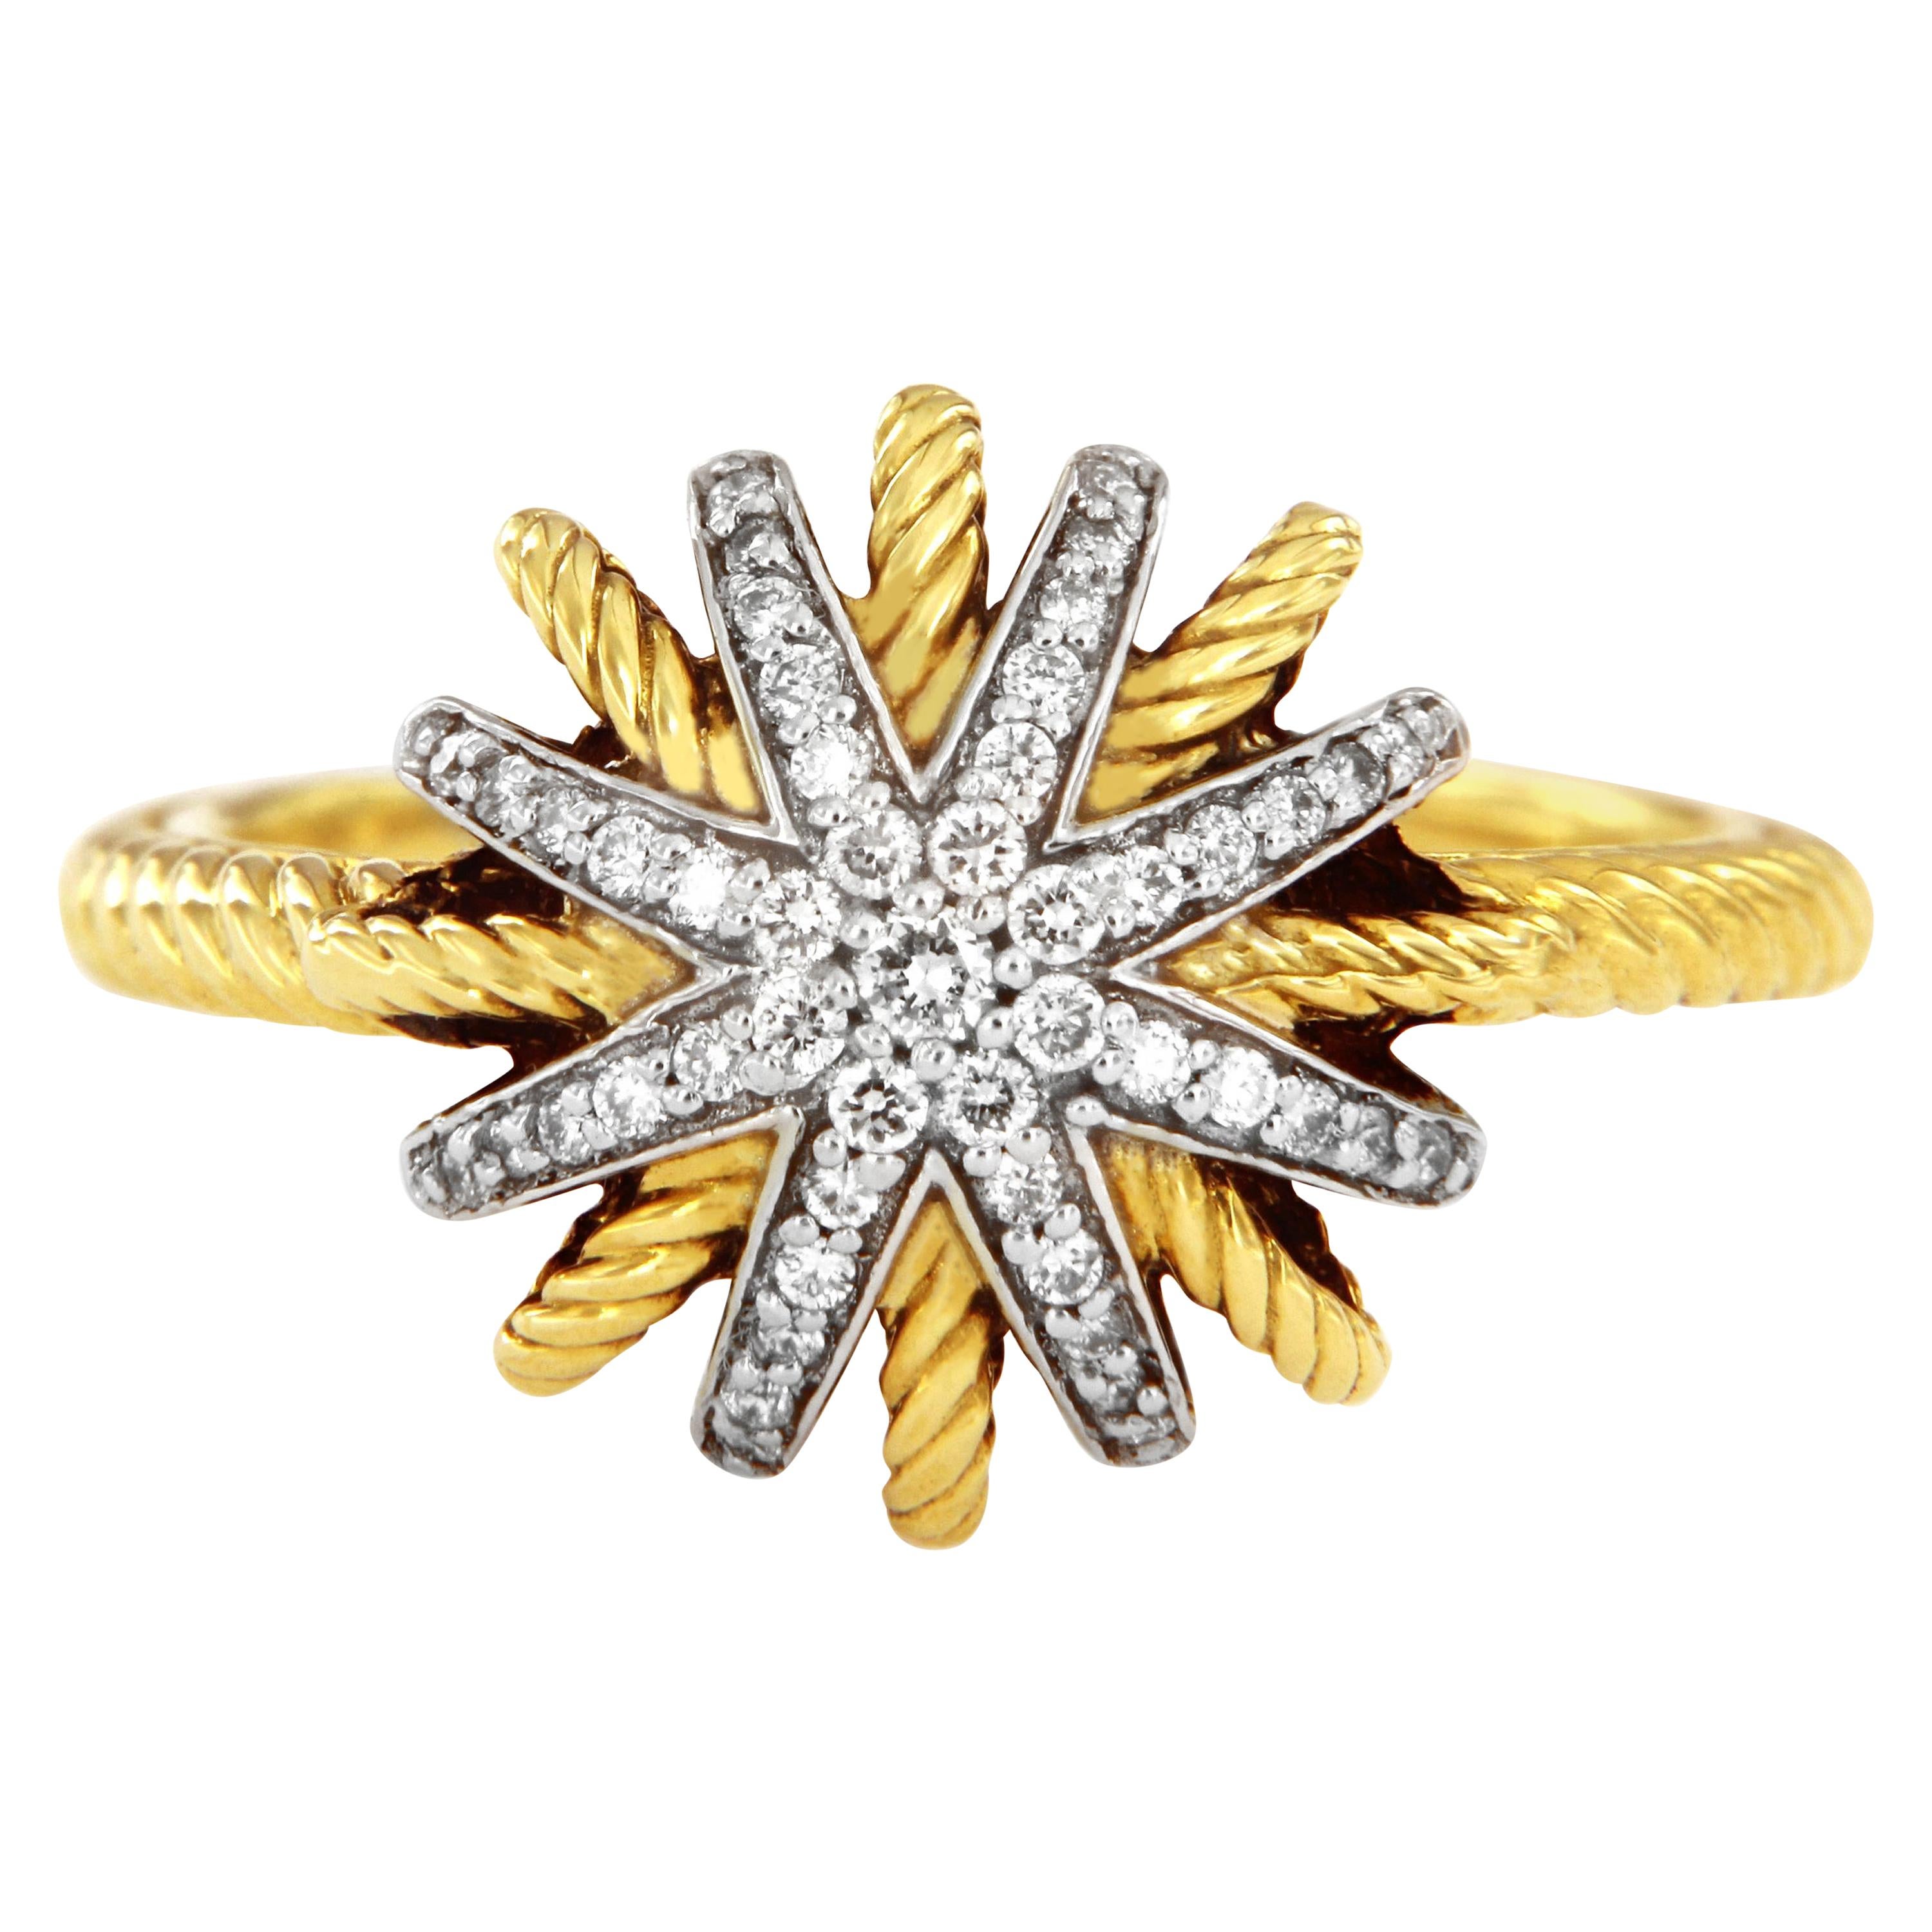 David Yurman Starburst Ring with Diamonds in 18 Karat Gold